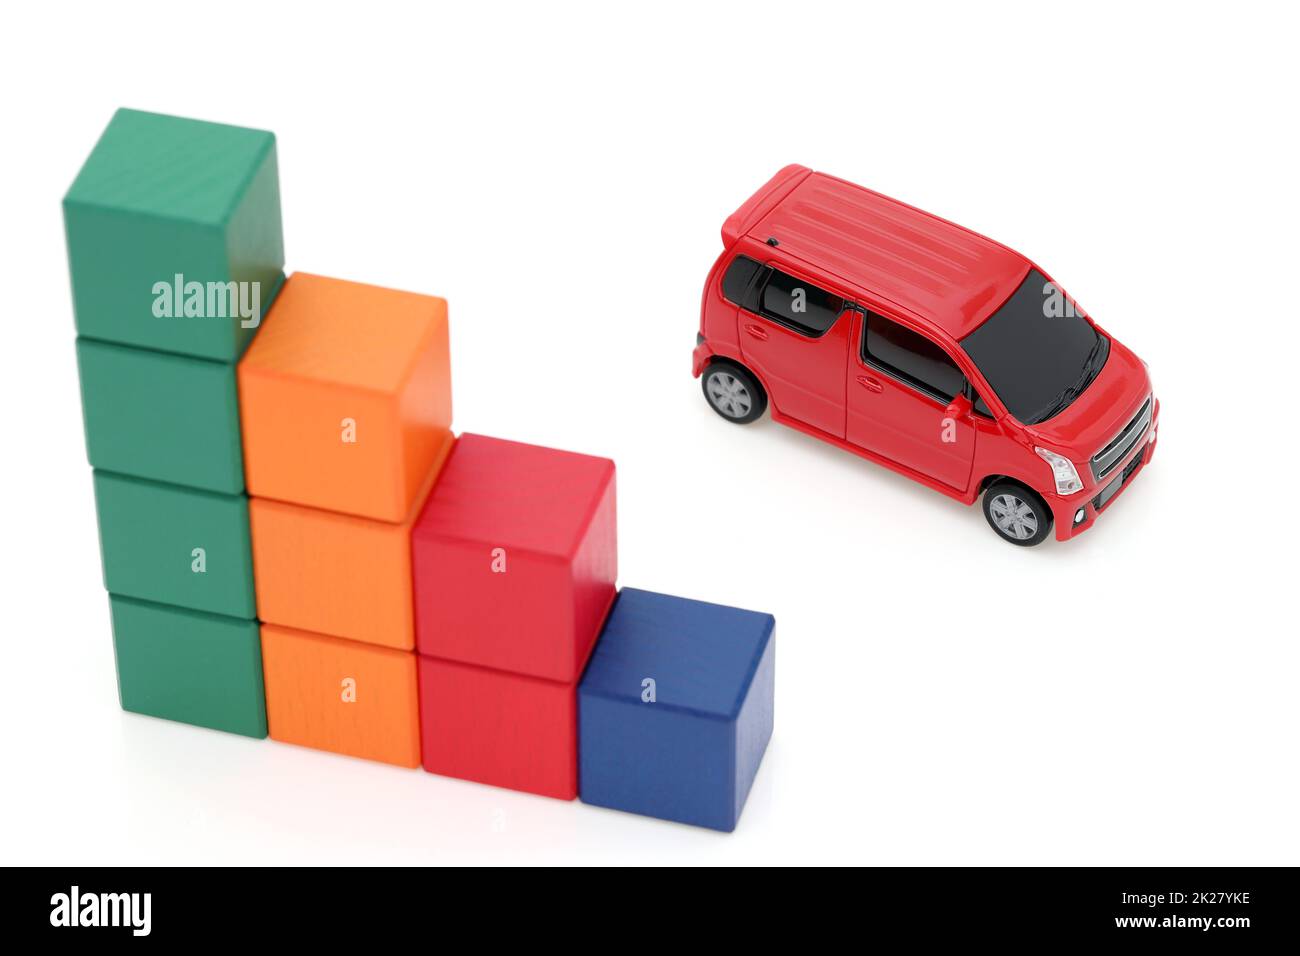 Petite voiture miniature et blocs de construction colorés en bois sur fond blanc Banque D'Images